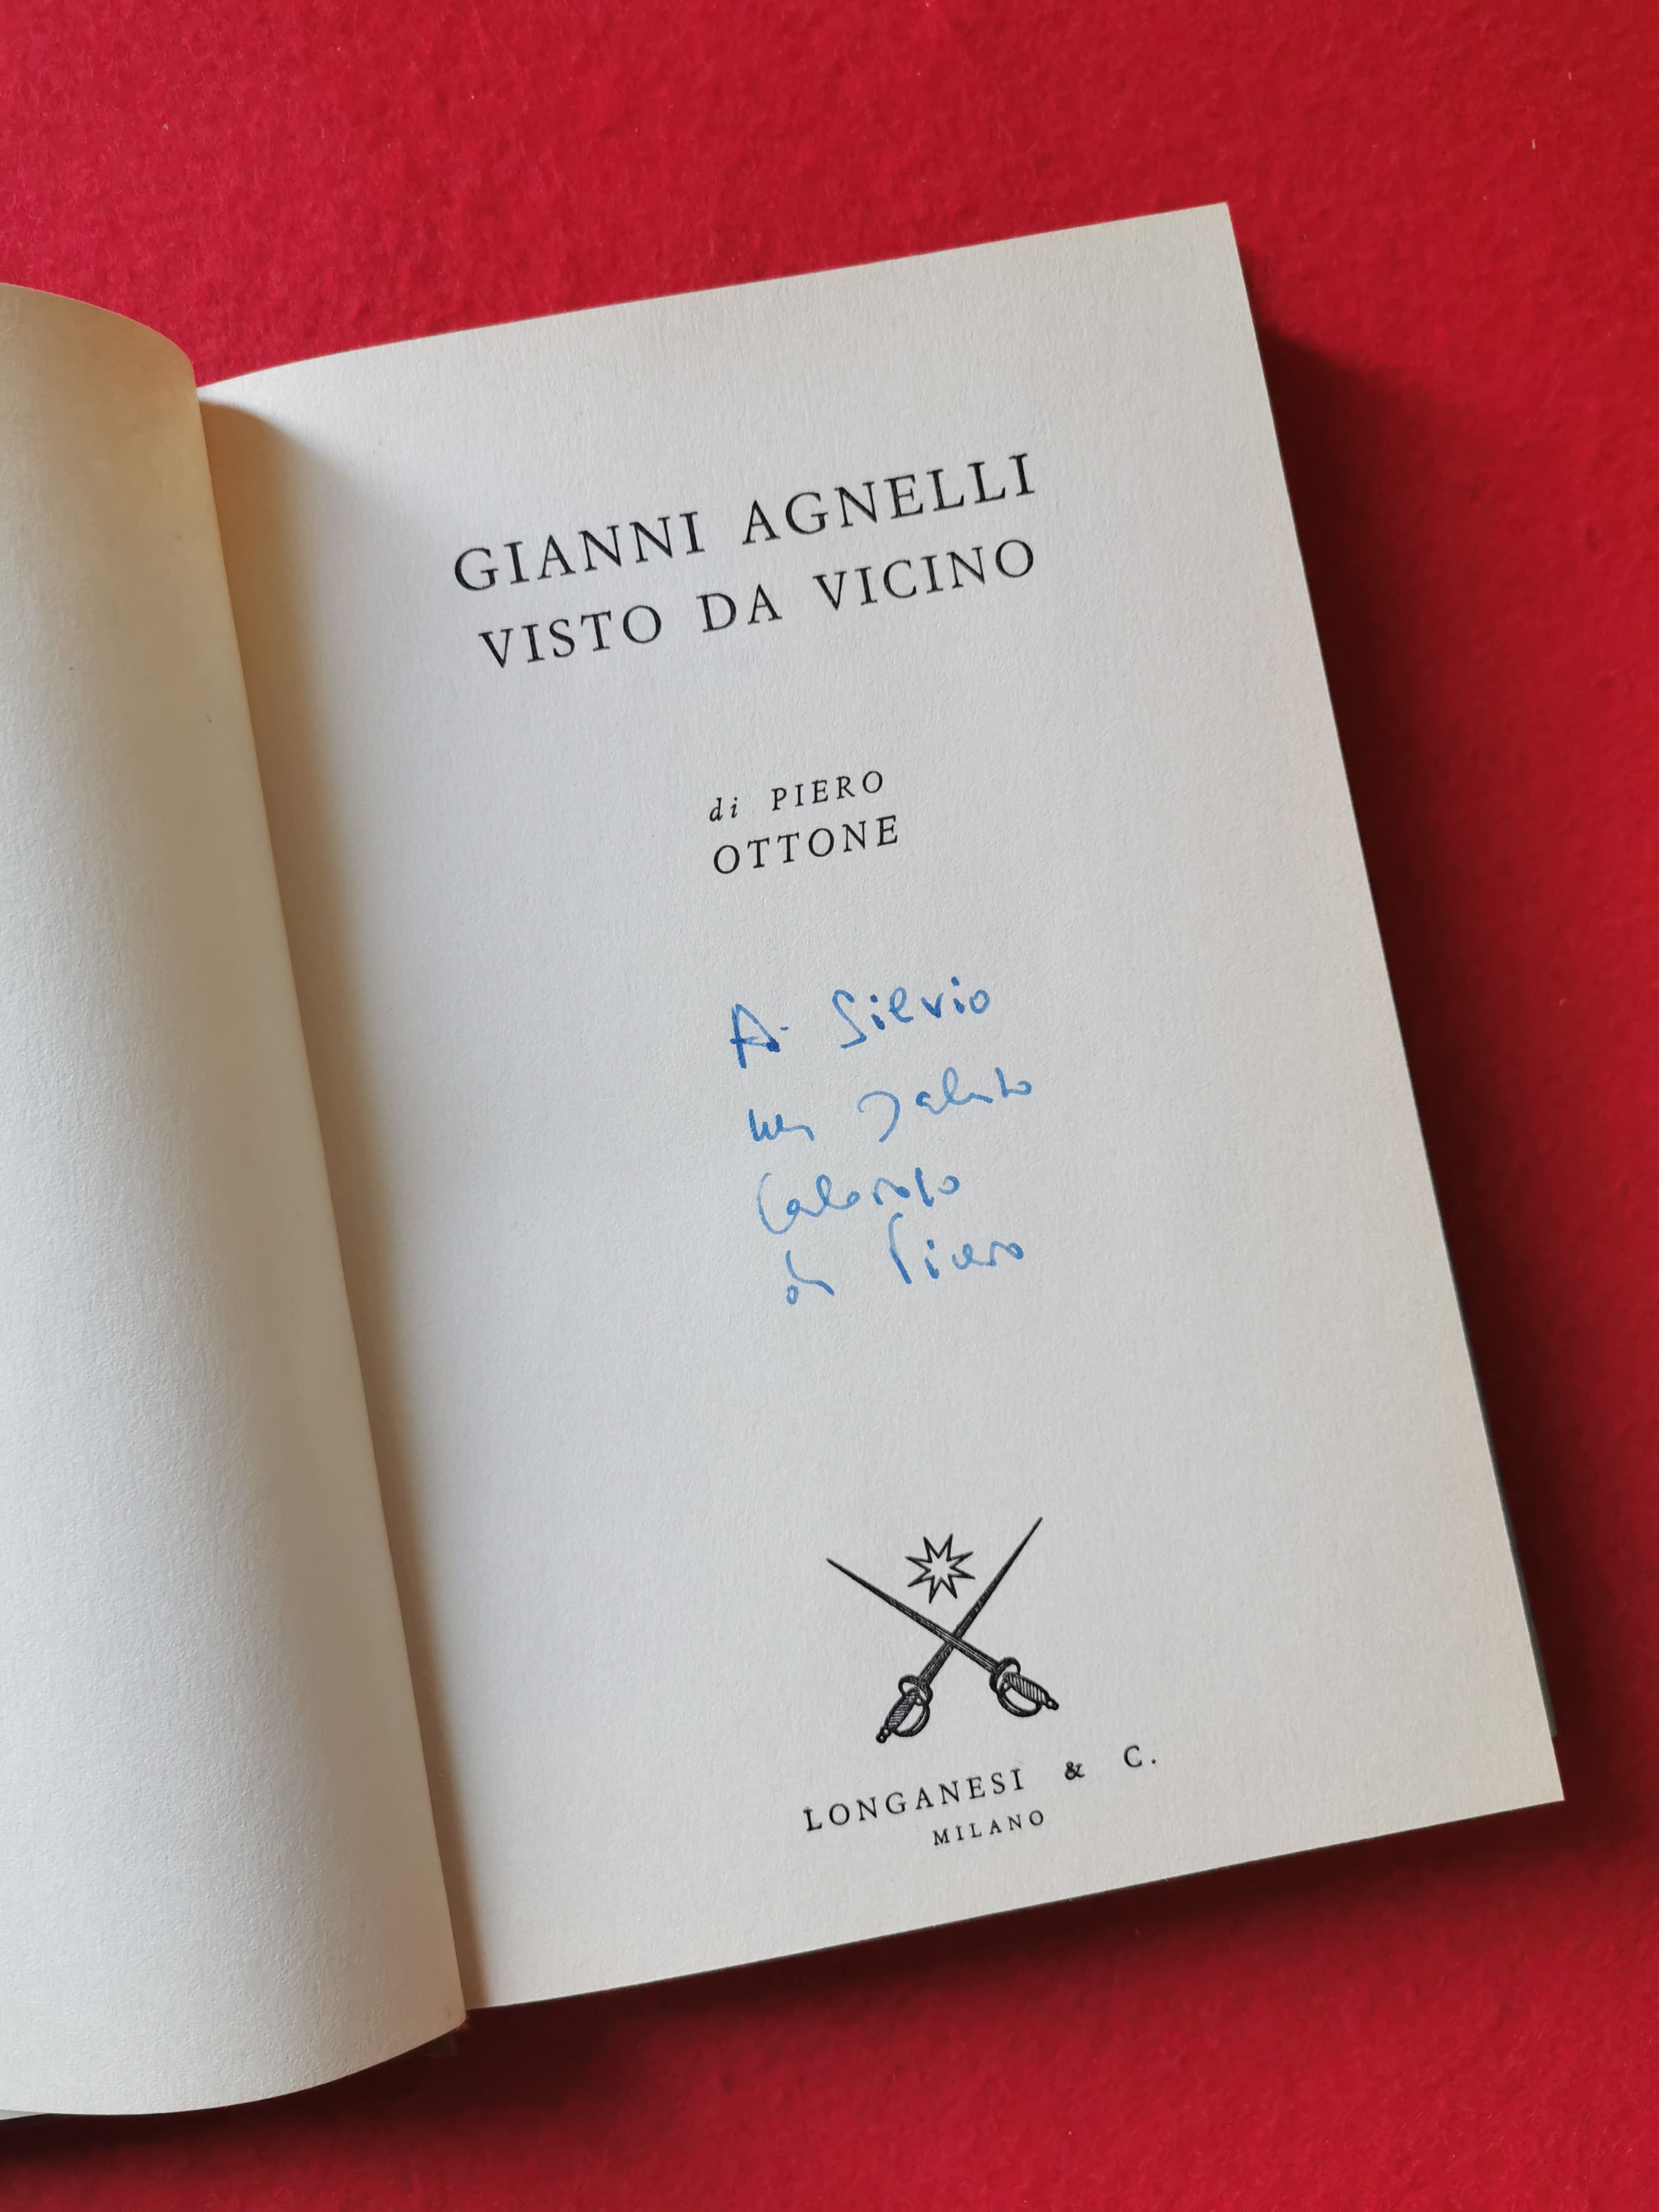 Libro "Visto da vicino" di Gianni Agnelli con deidca a Silvio Bertoldi